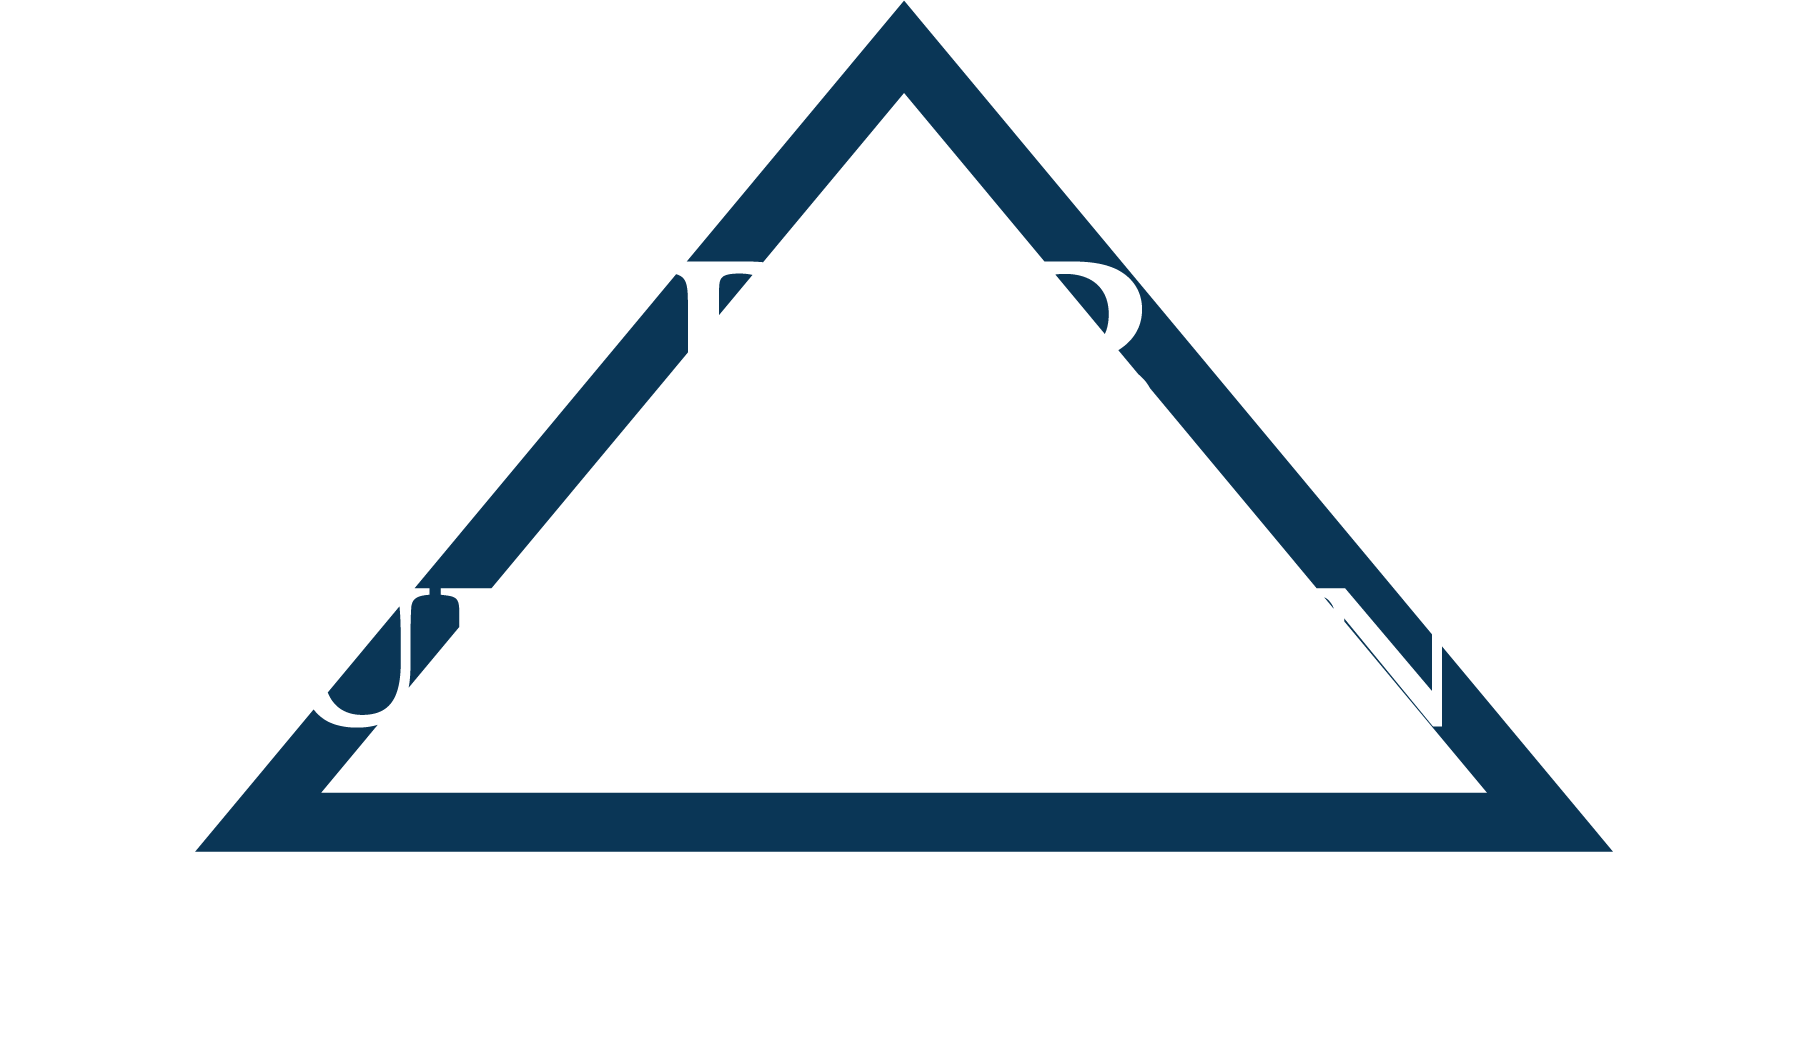 RJB Building Inc